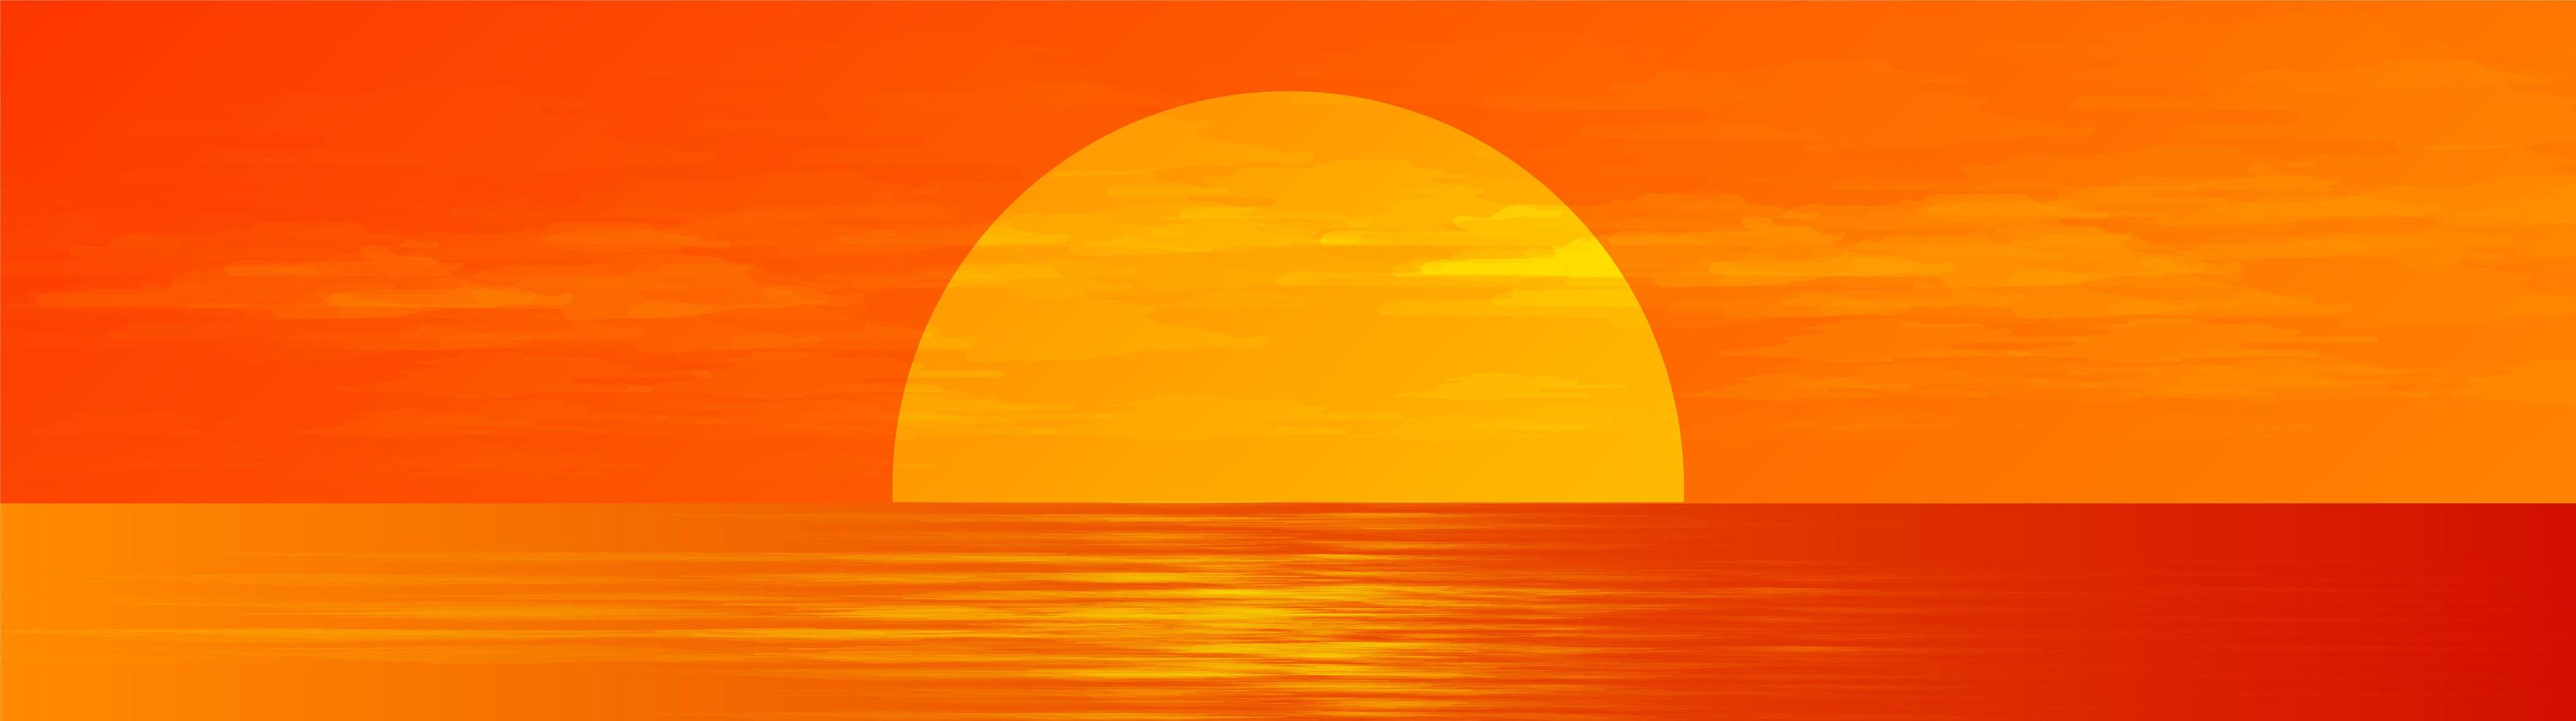 Panorama schöner Vollmond auf Sonnenaufgang-Seelandschaftshintergrund, Sonnenschein und horizontaler Konzeptentwurf. vektor